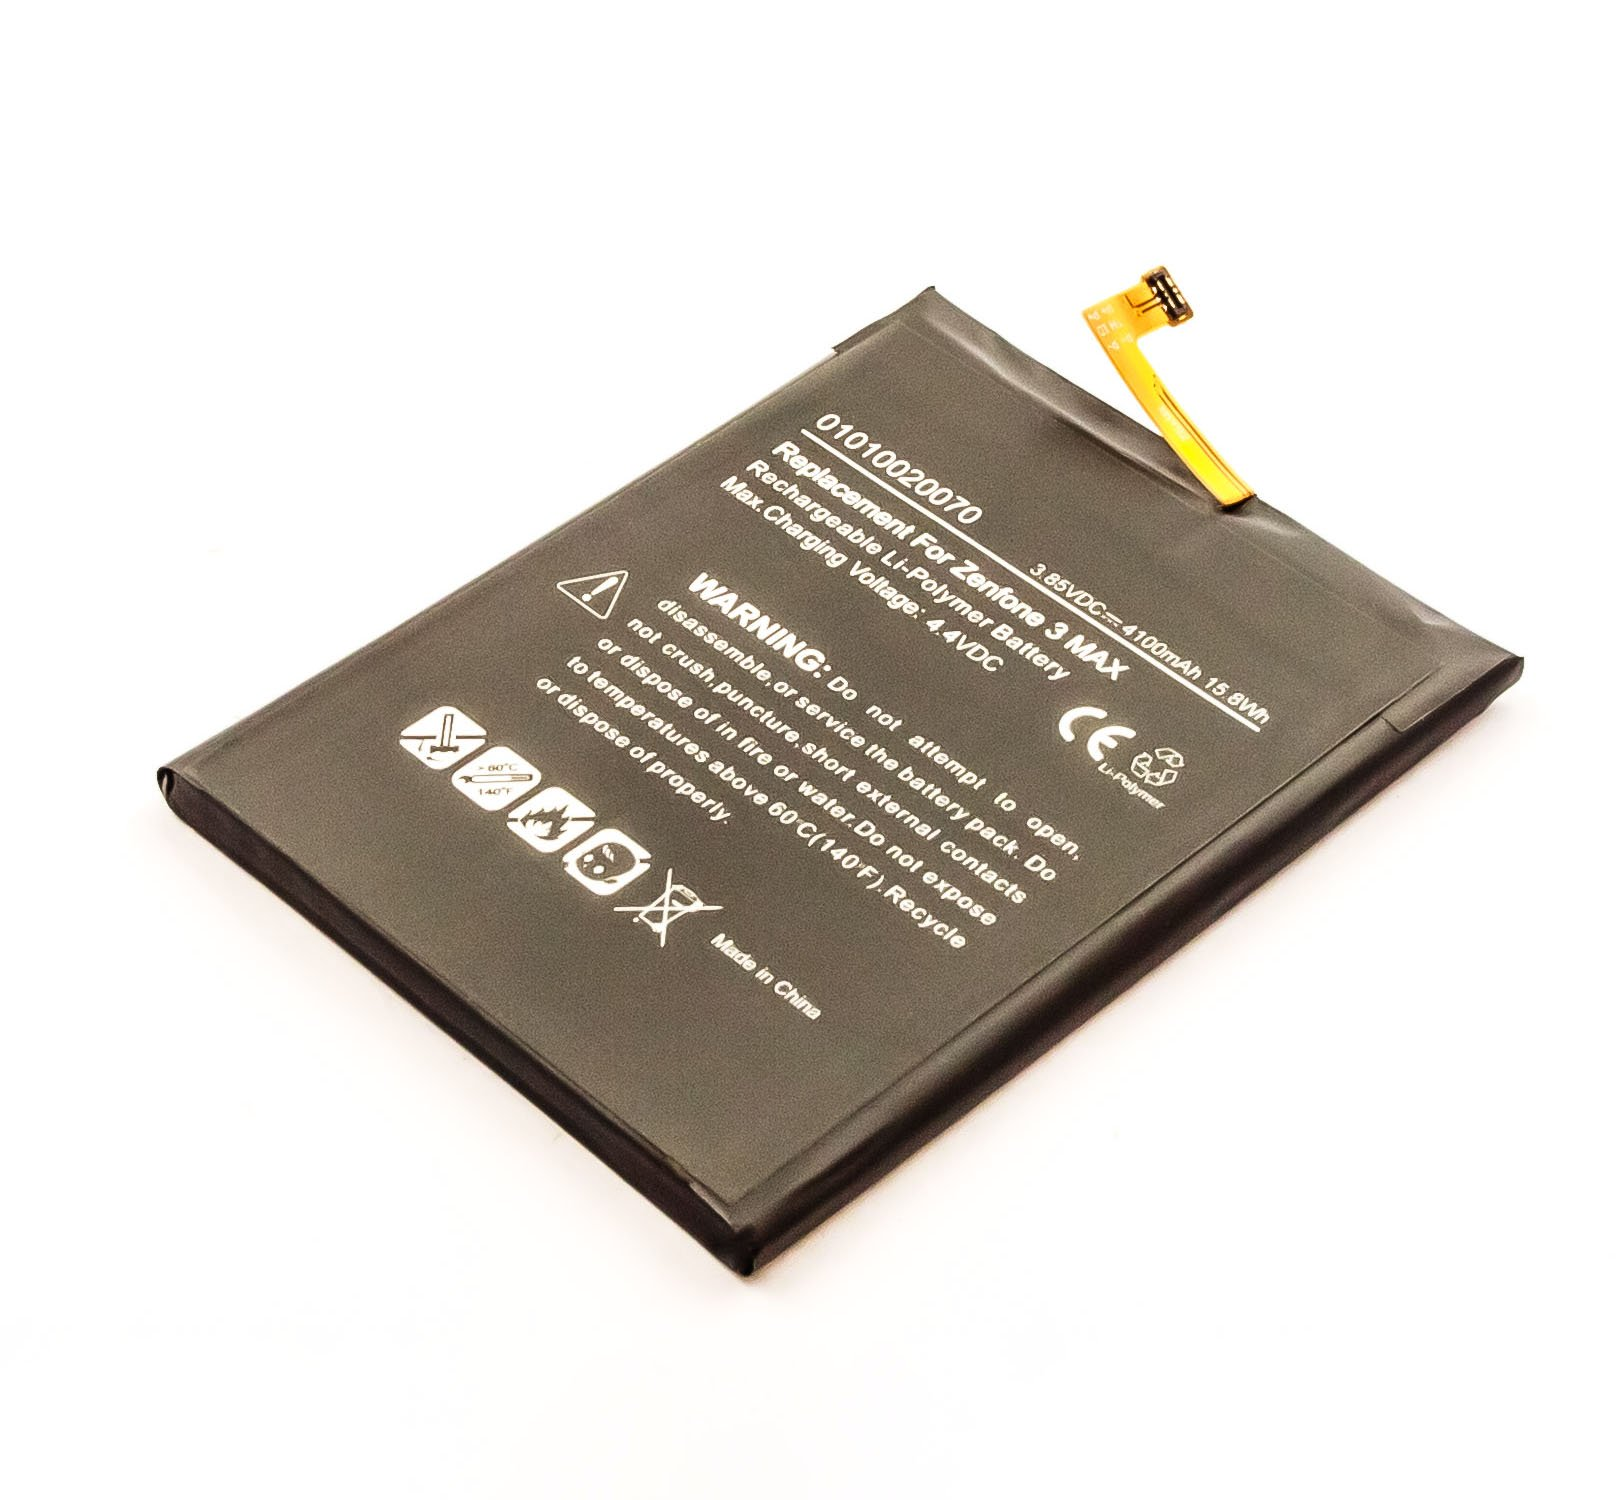 Max kompatibel Li-Pol Akku mit 3 AGI SIM Dual mAh Volt, ZenFone 3.9 4100 Handy-/Smartphoneakku, Asus